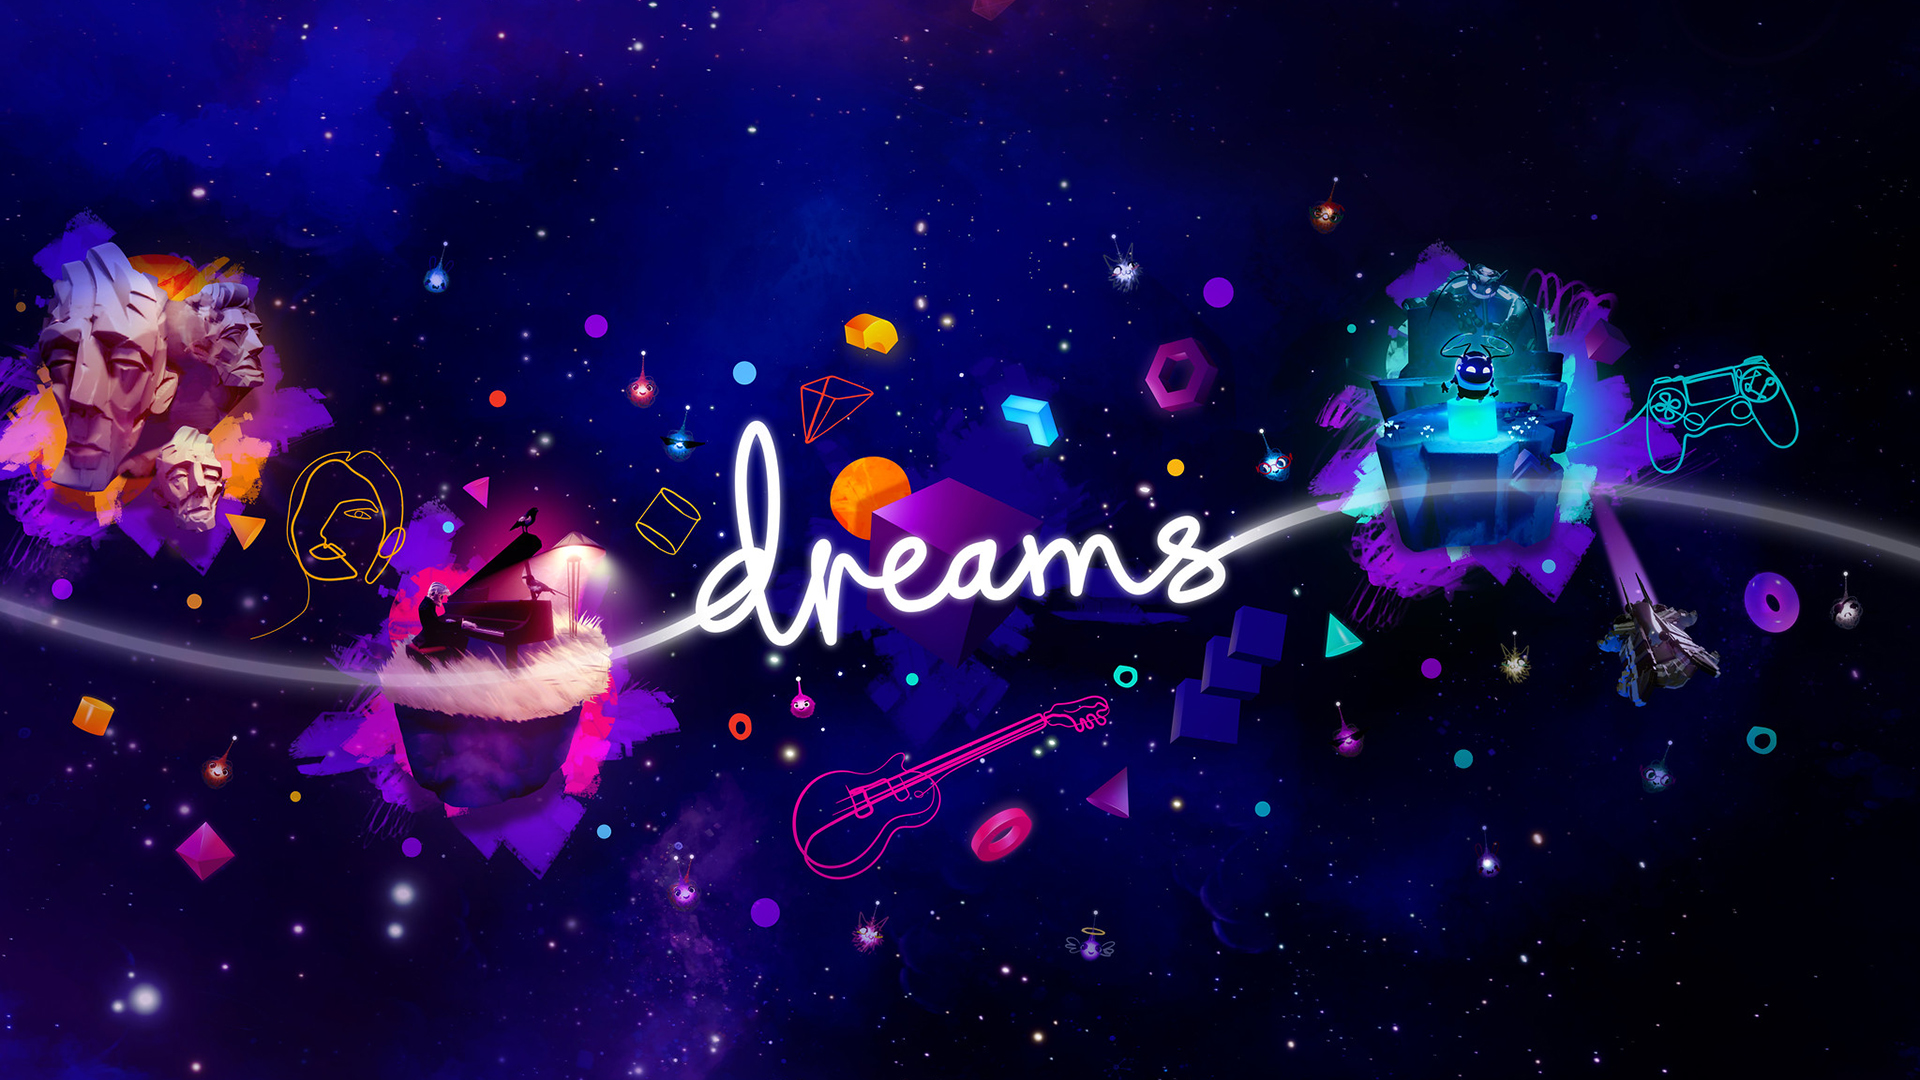 Dreams Demo PS4